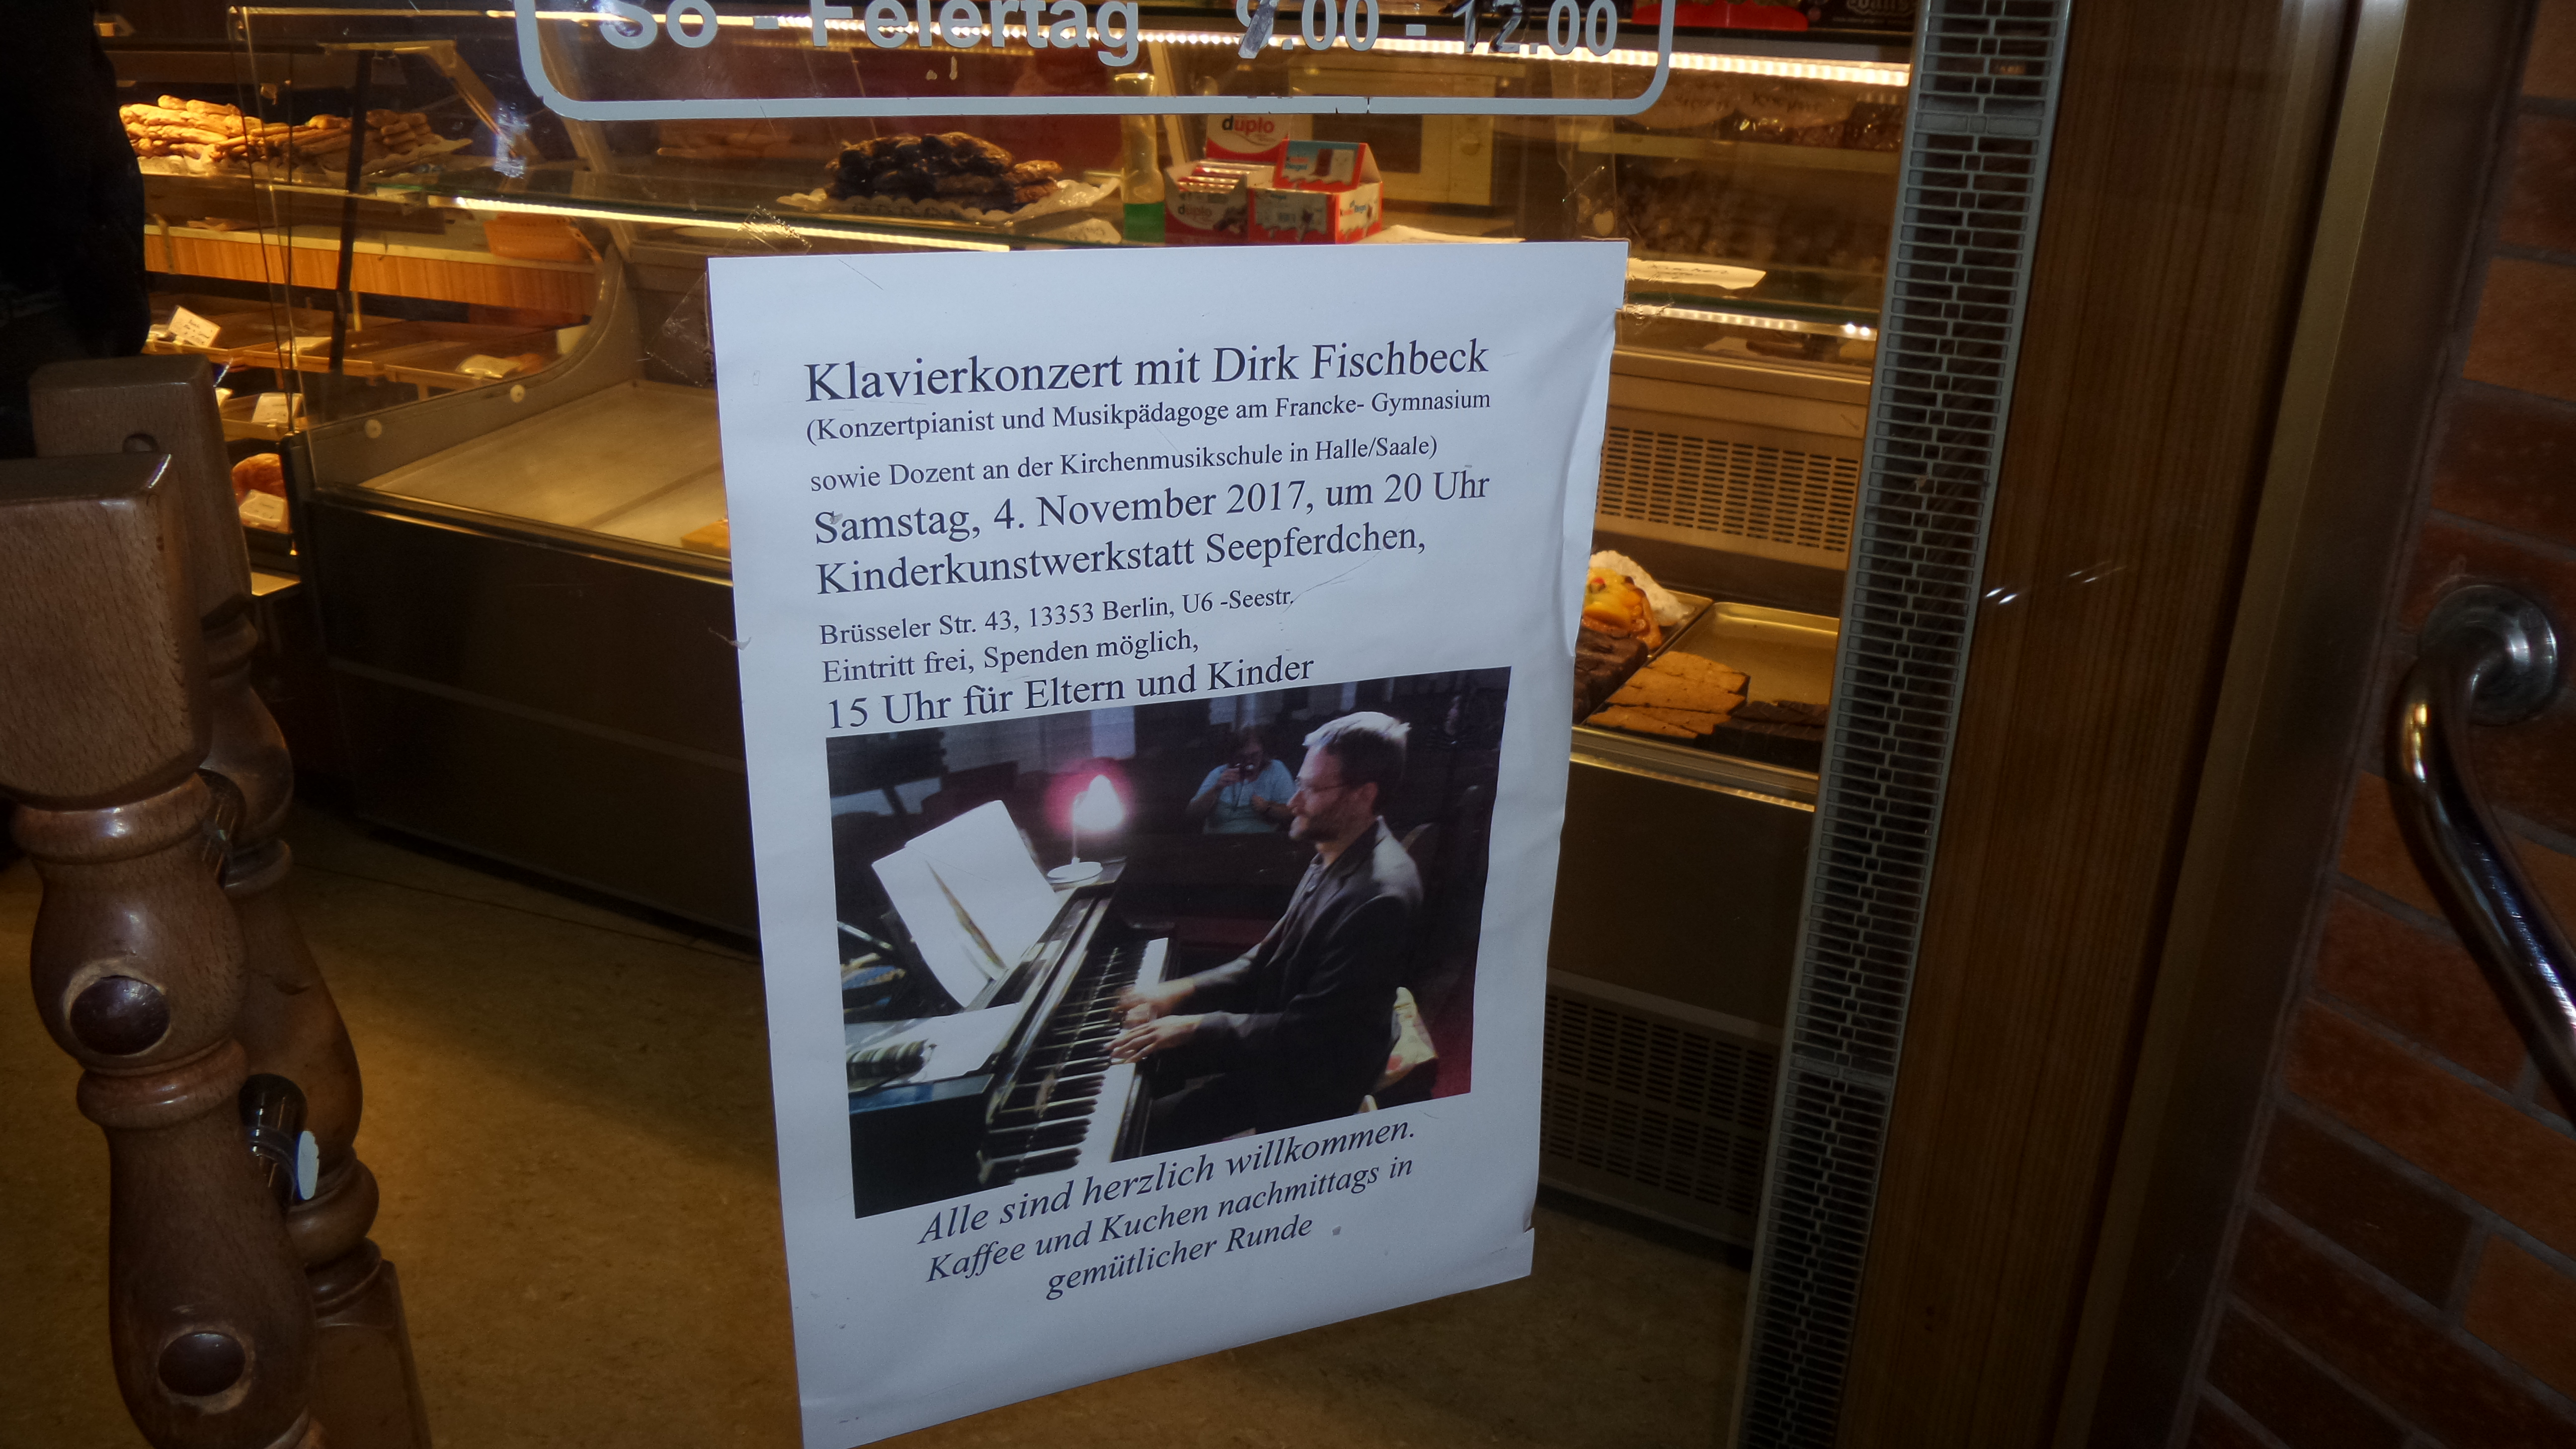 Plakat zu Klavierkonzert mit Dirk Fischbeck.